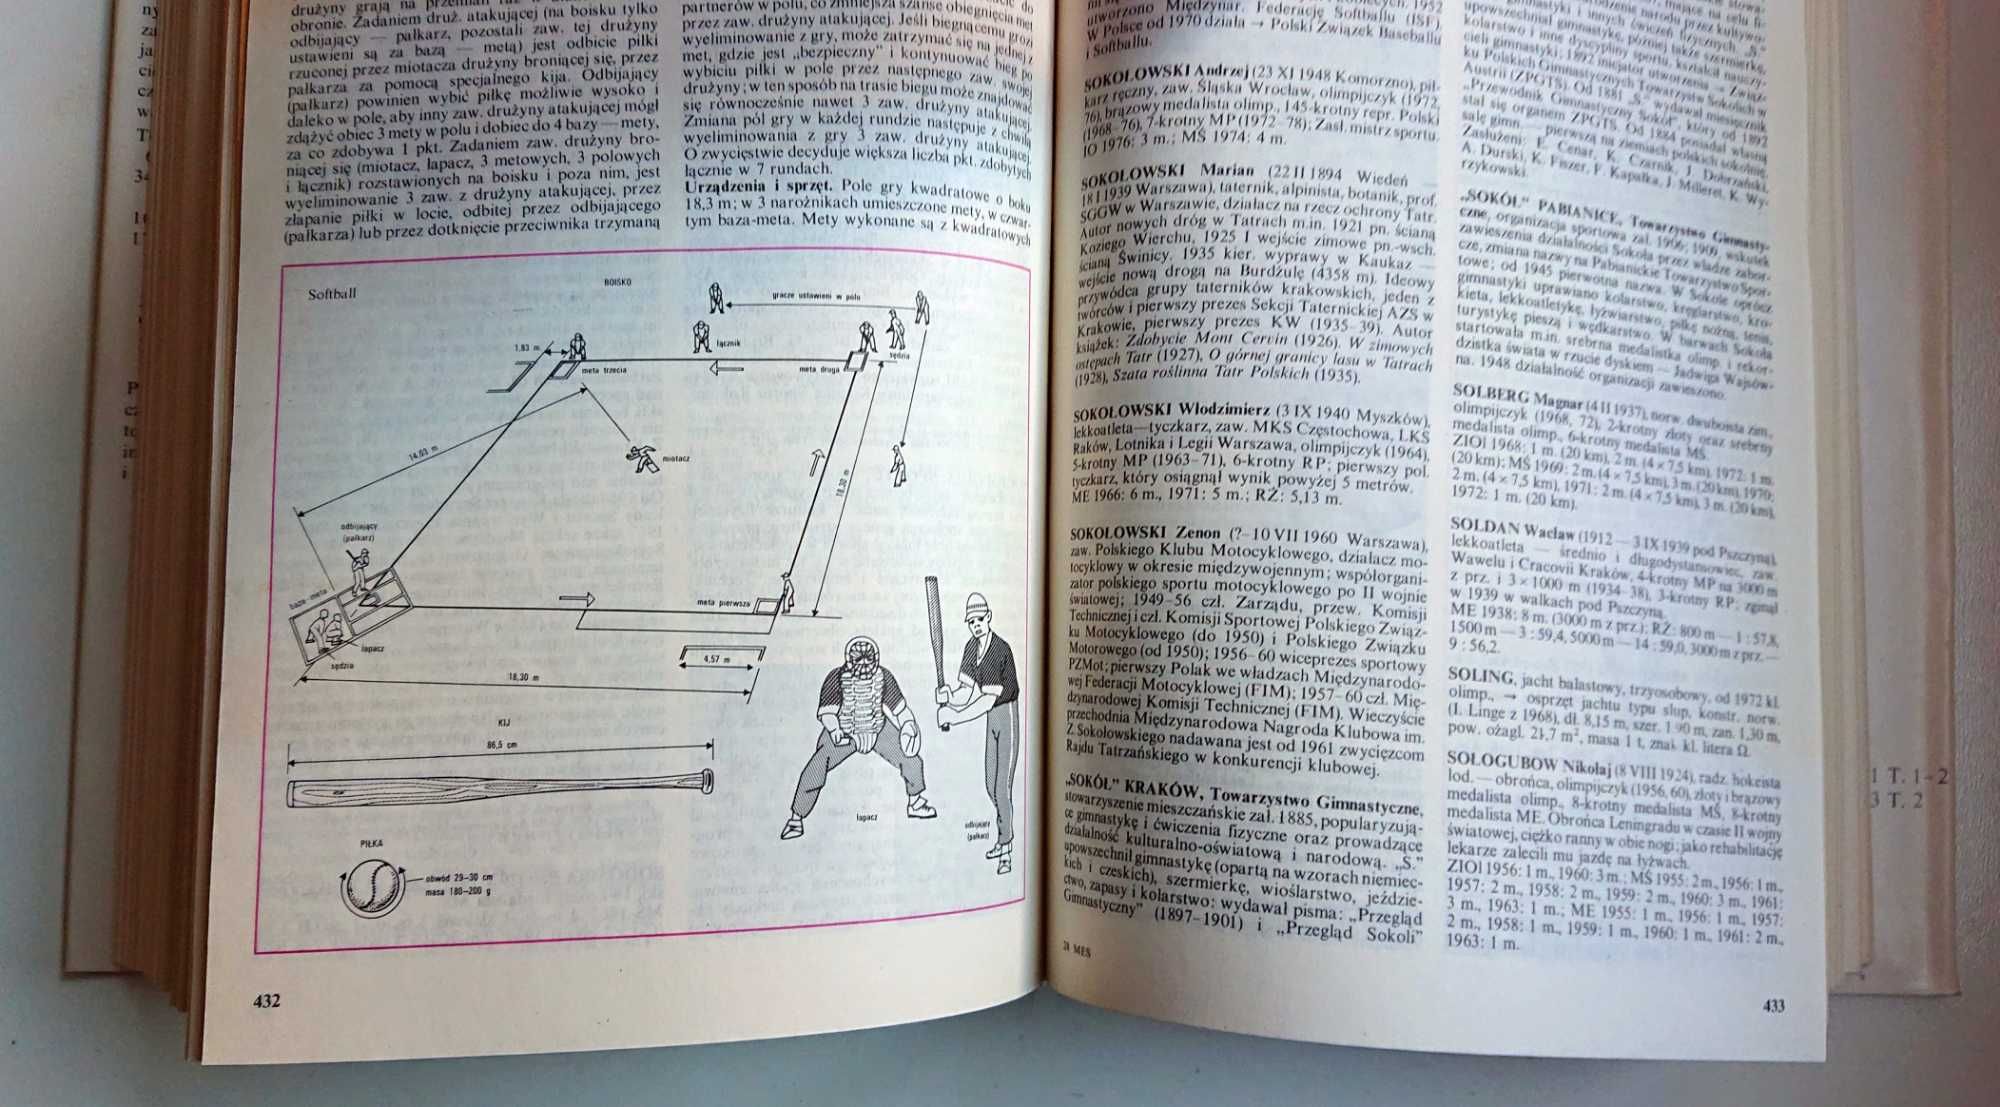 "Mała encyklopedia sportu" - 2 tomy - 1985